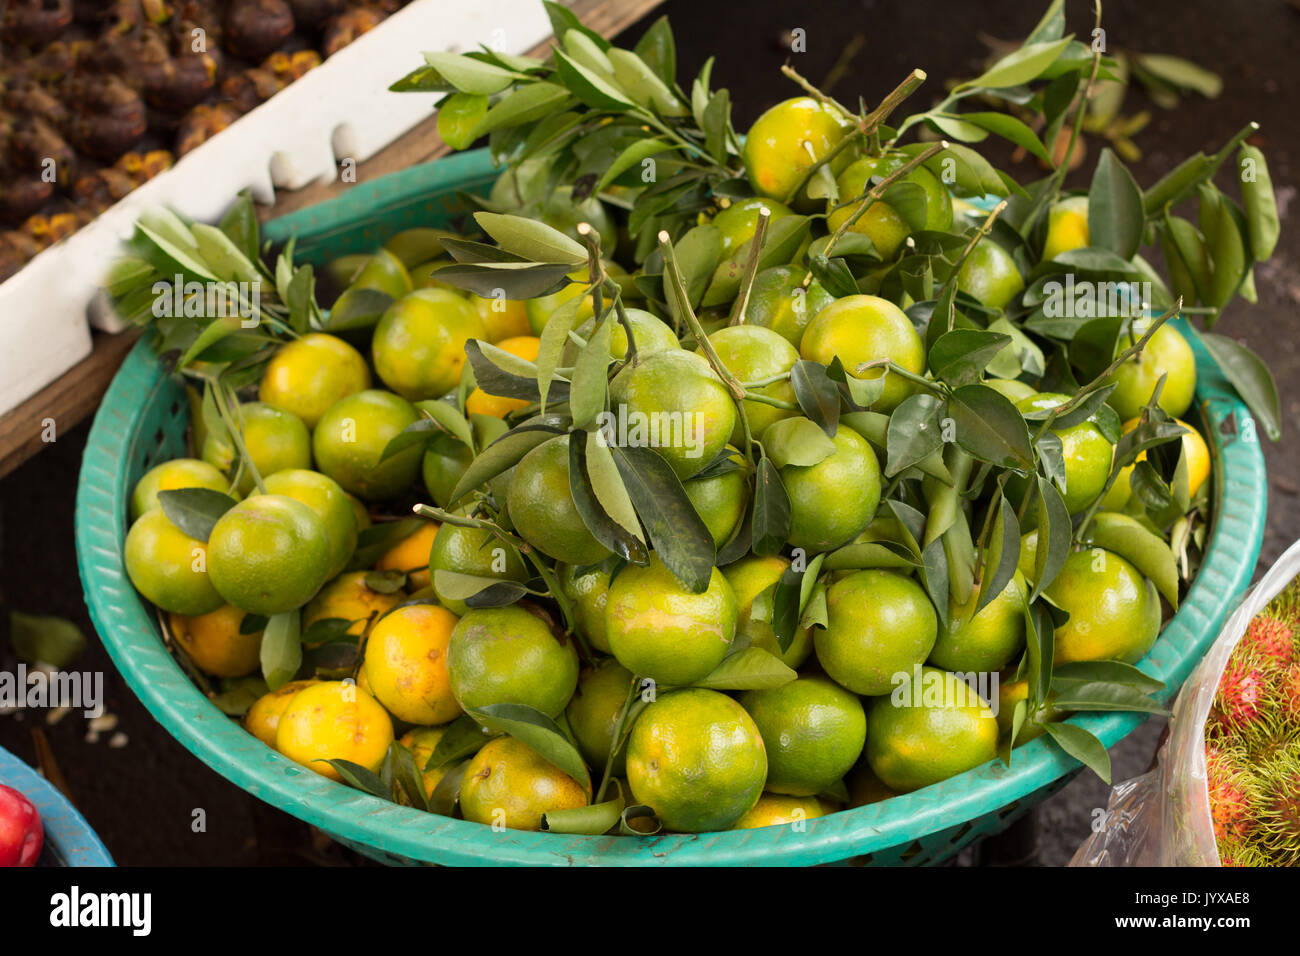 basket full of green tangerines Stock Photo